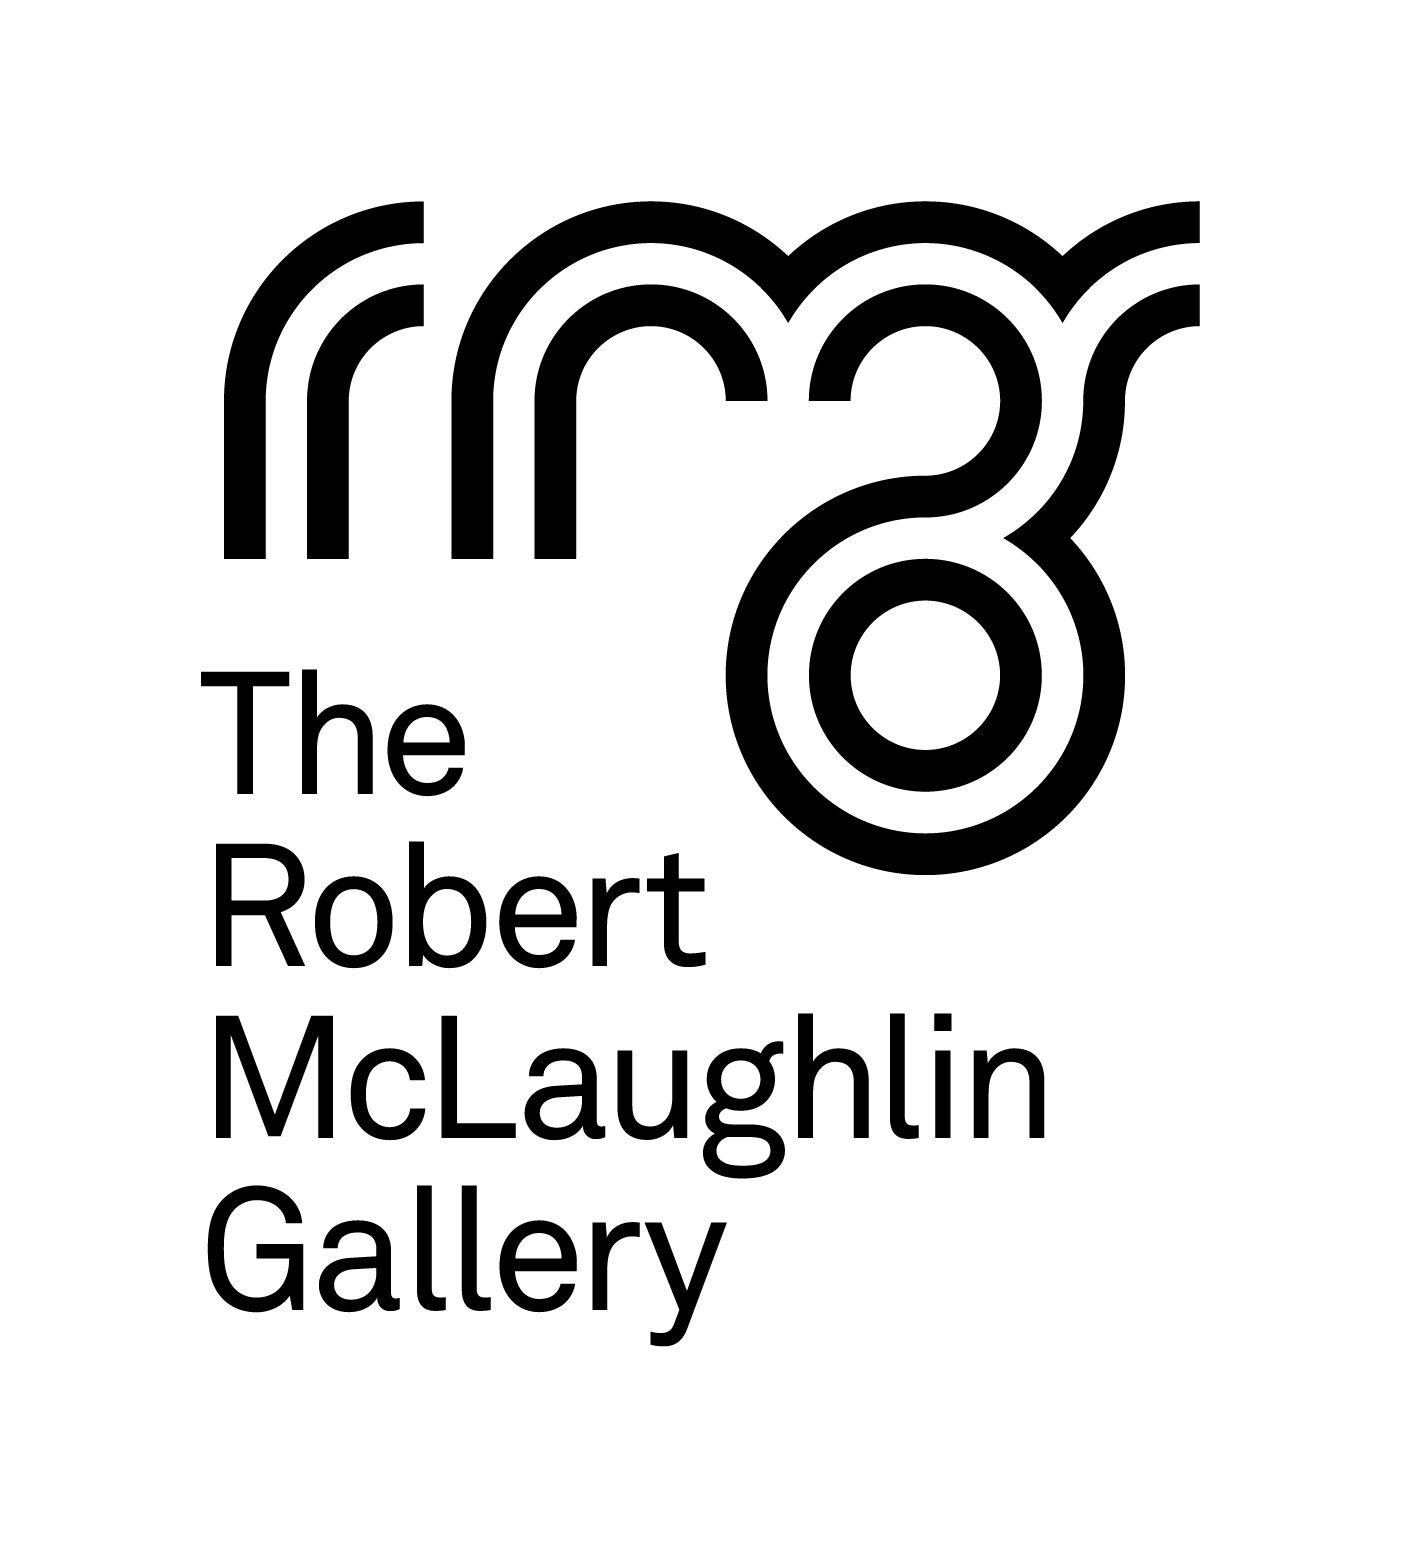 The Robert McLaughlin Gallery logo